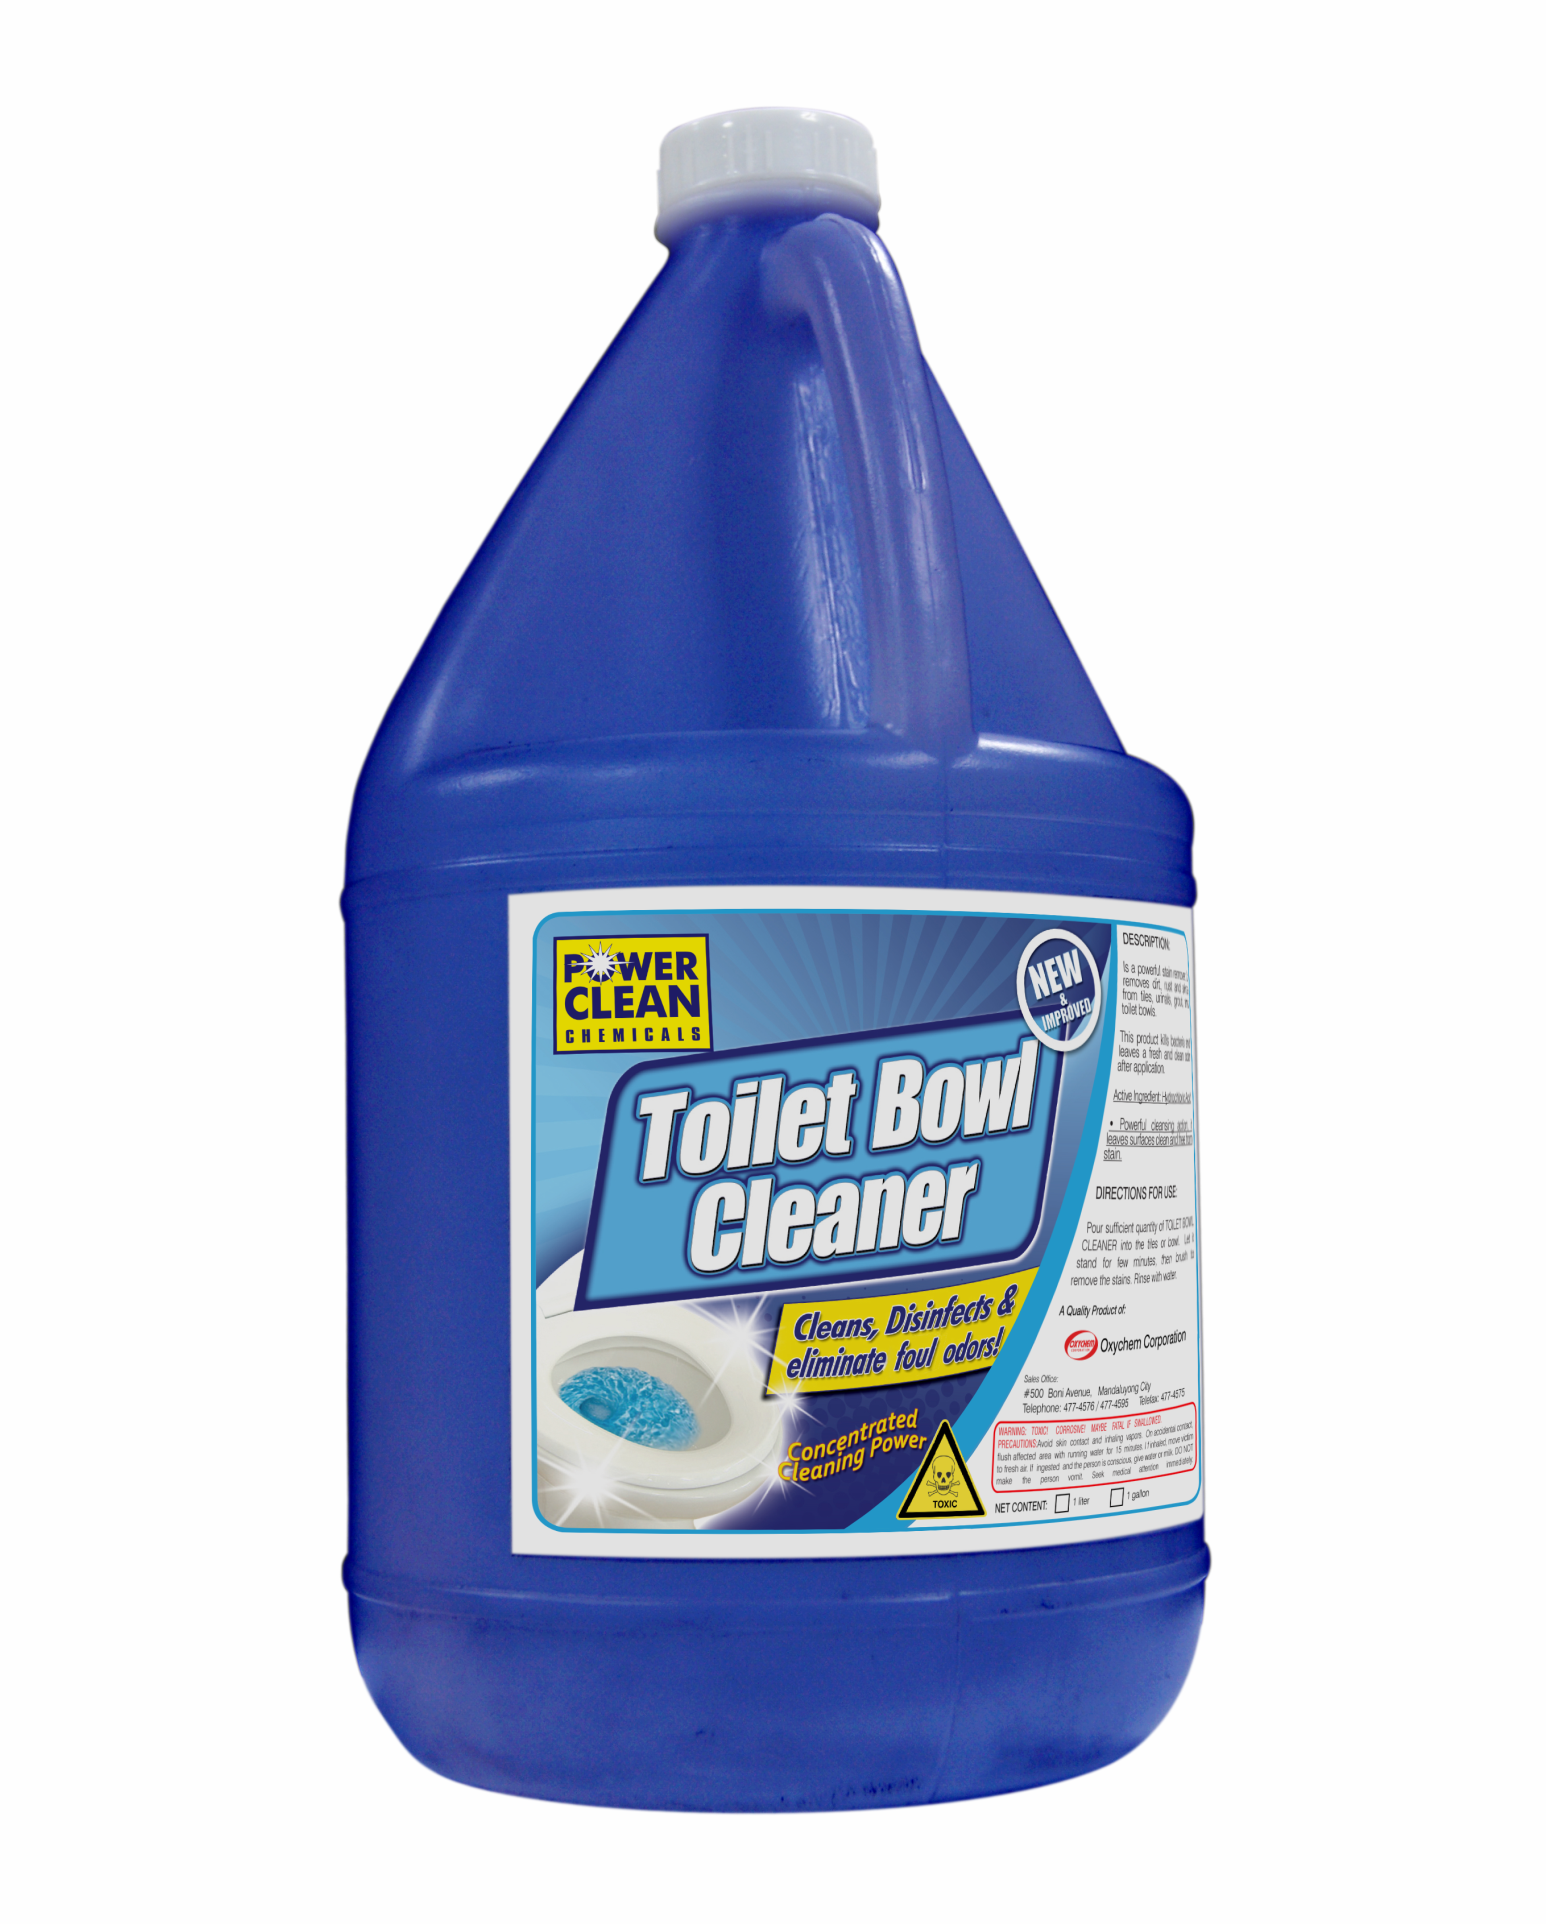 Toilet Bowl Cleaner Commercial Grade 1 Quart